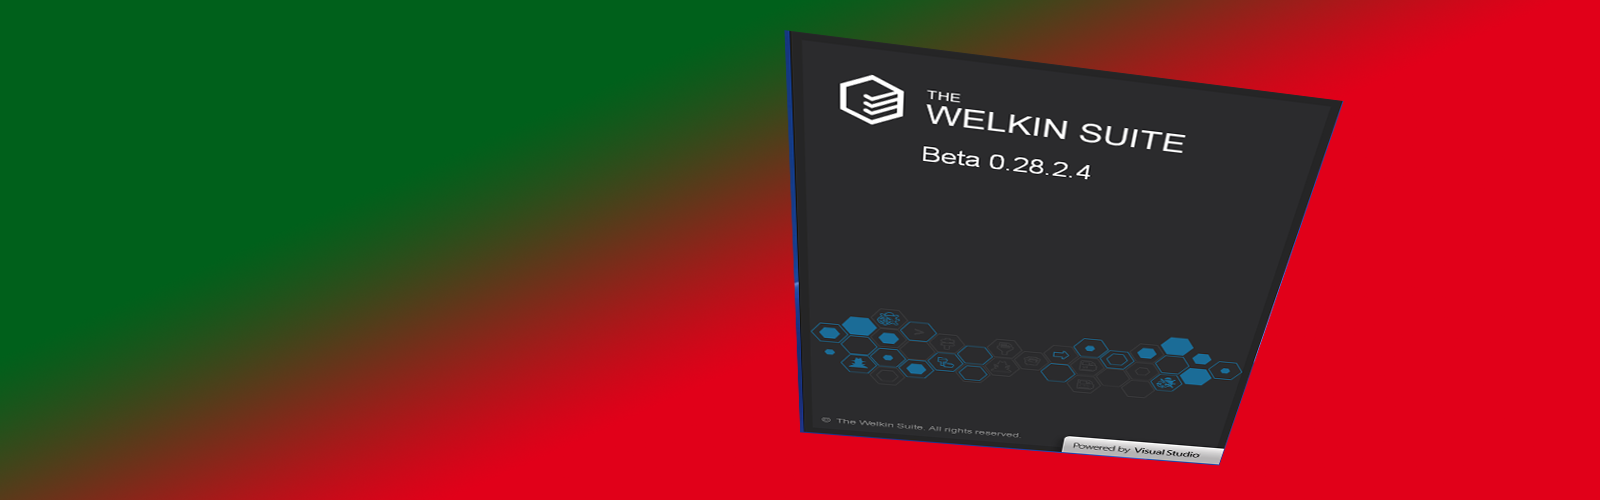 Welkin Suite IDE for Salesforce developers